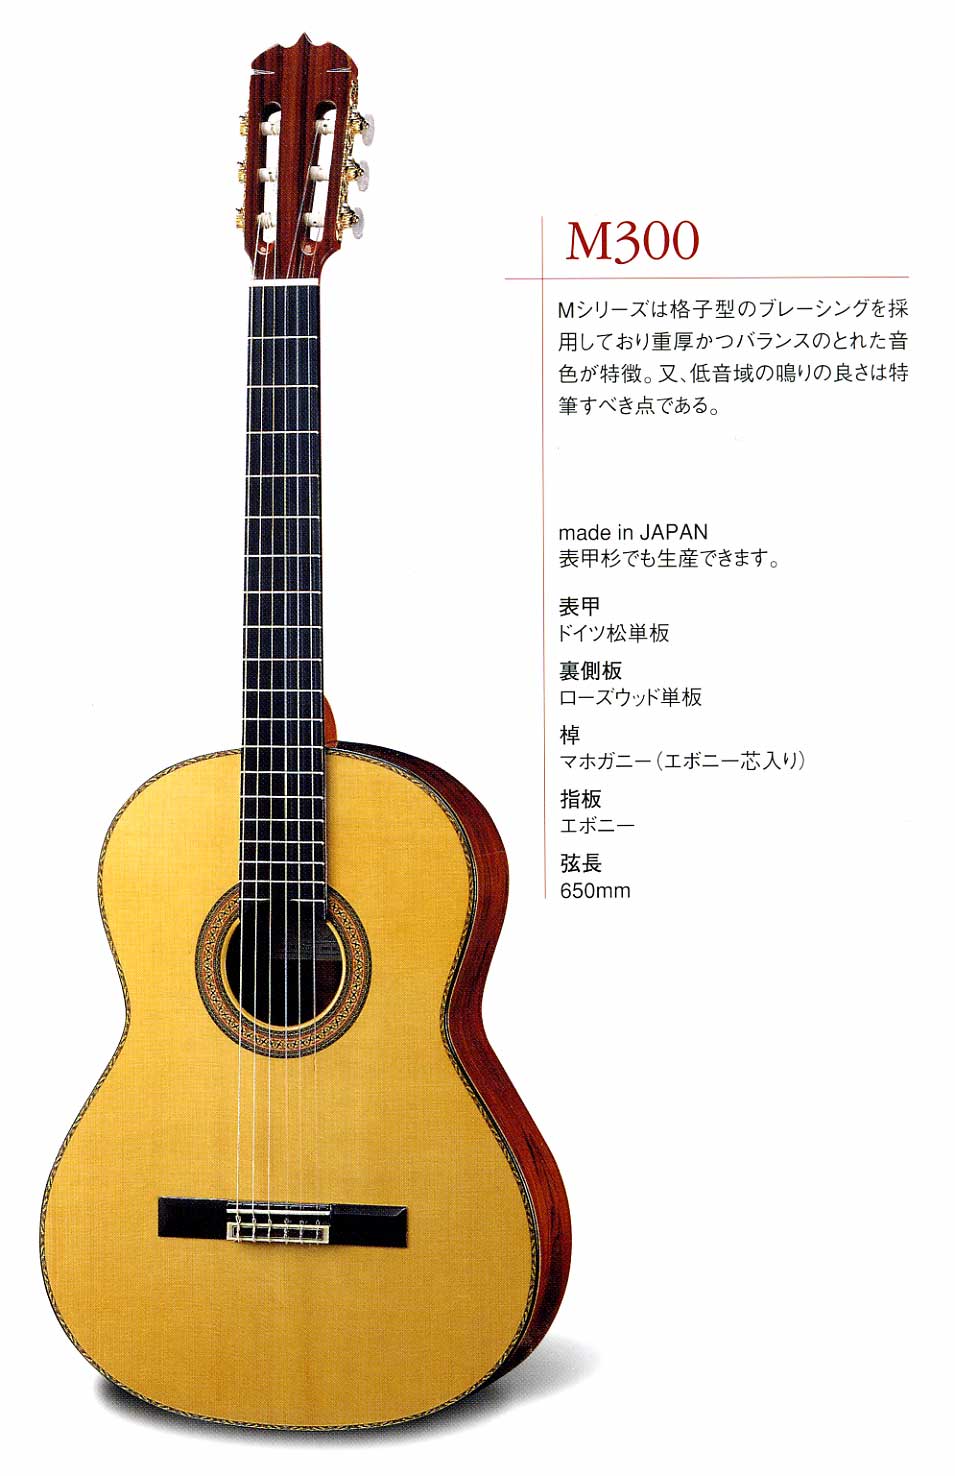 ぺぺさんの商品一覧はこちらRYOJI MATSUOKA 松岡良治 ギター クラシックギター